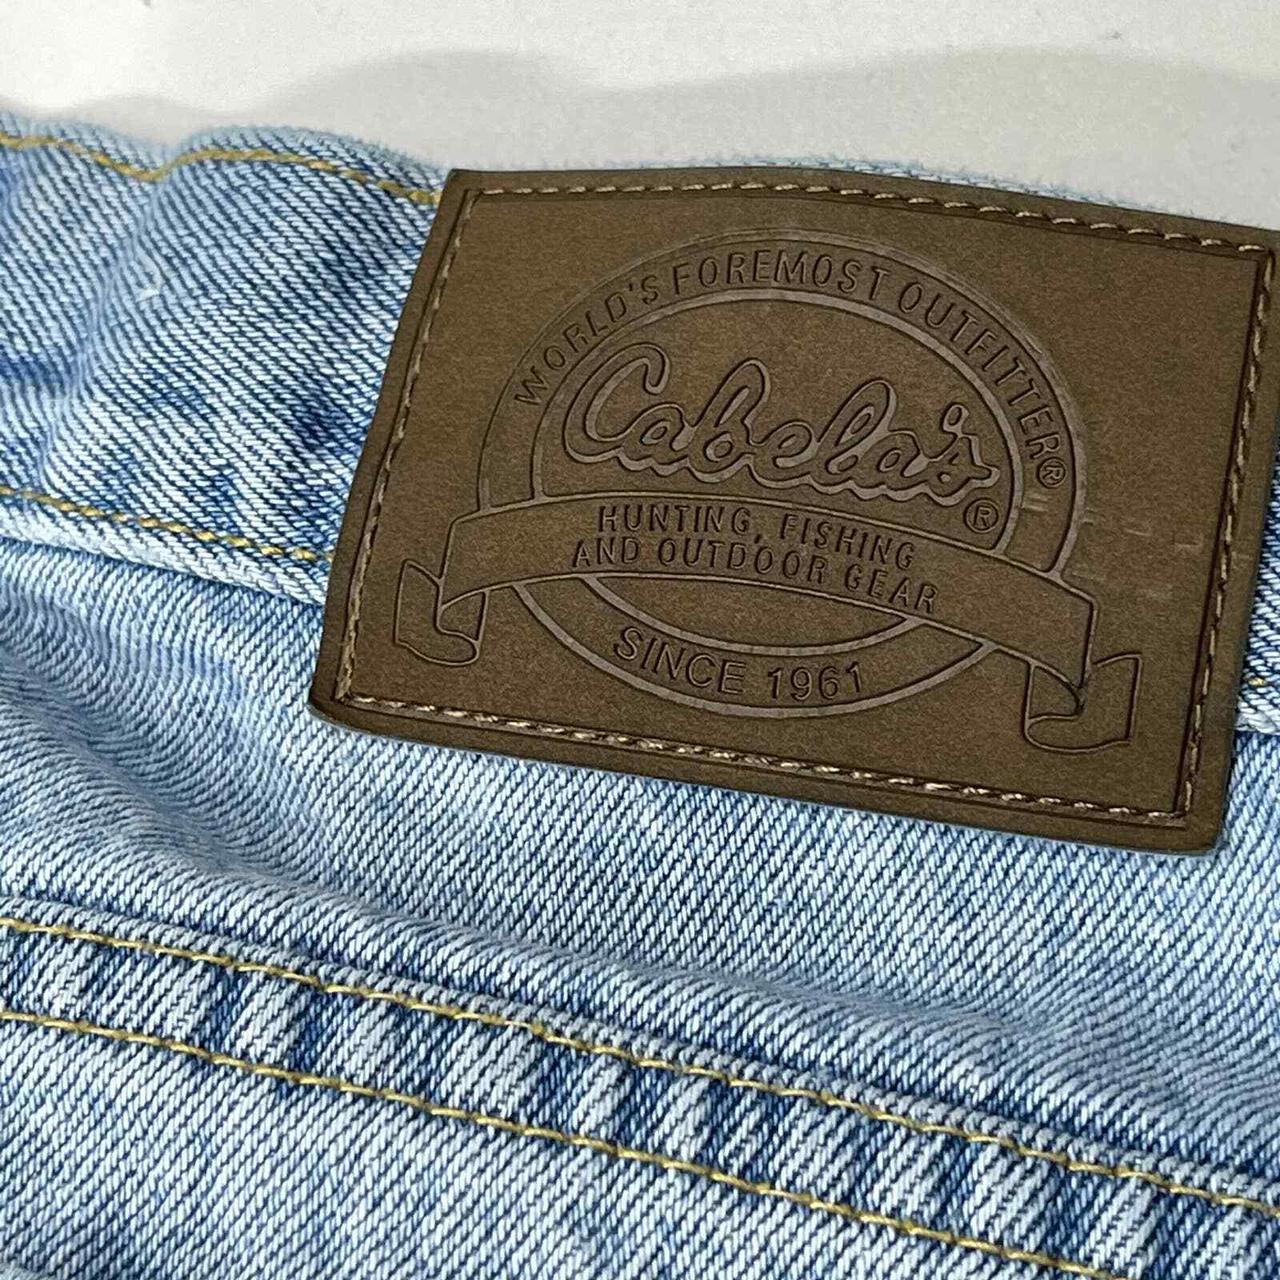 Product Image 2 - Cabela's Jeans Men Size 32